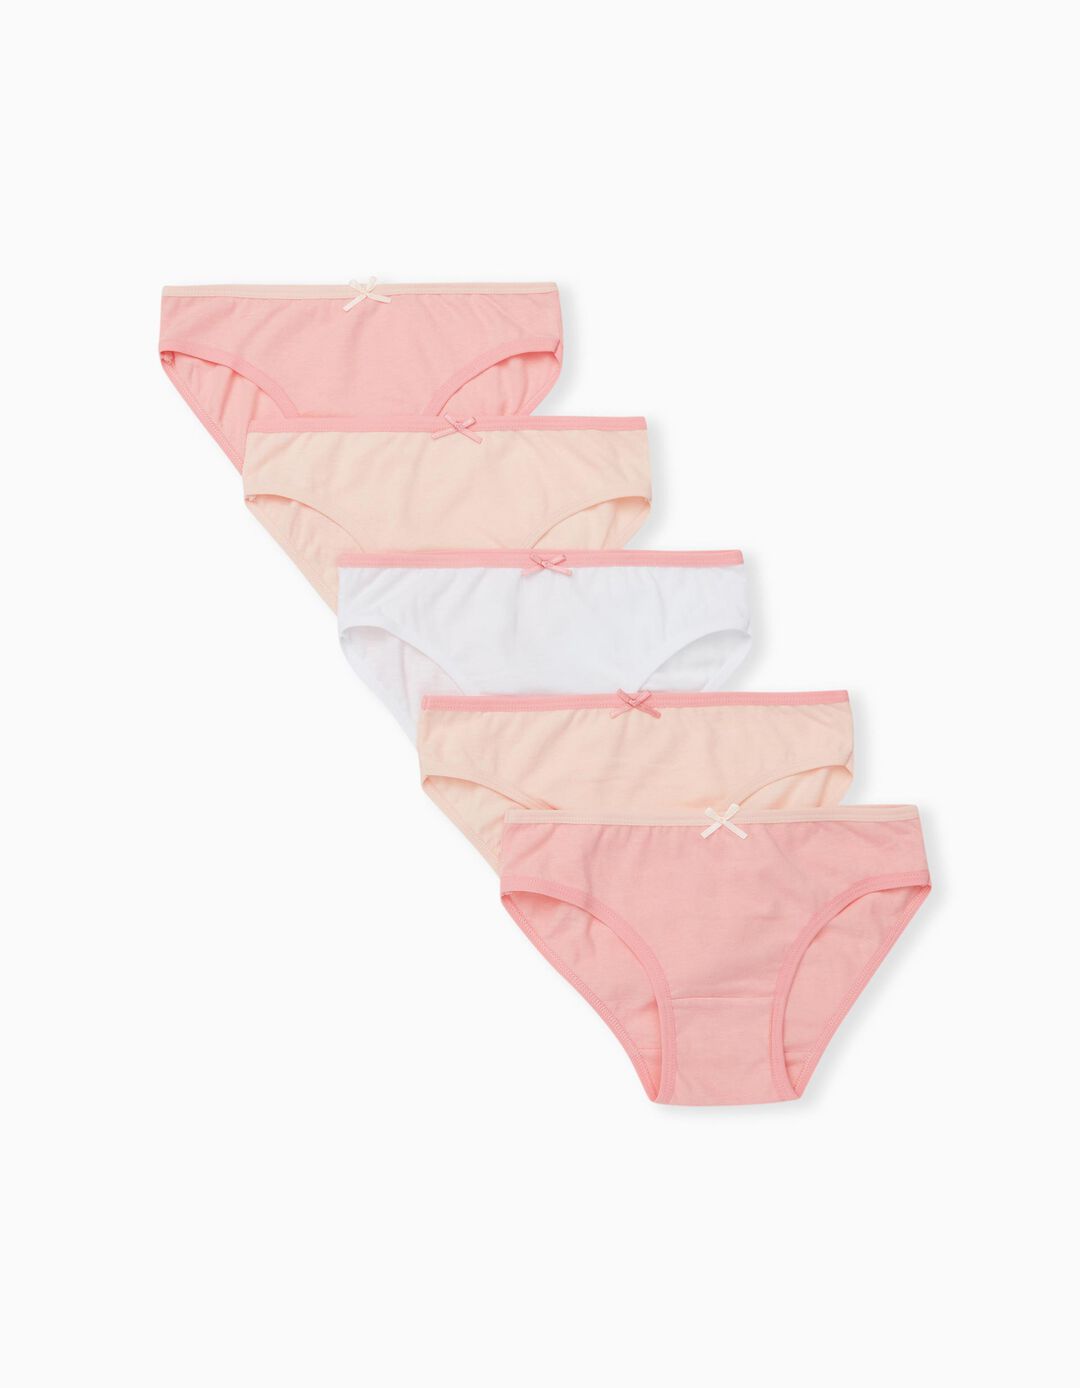 5 Briefs Pack, Girls, Pink